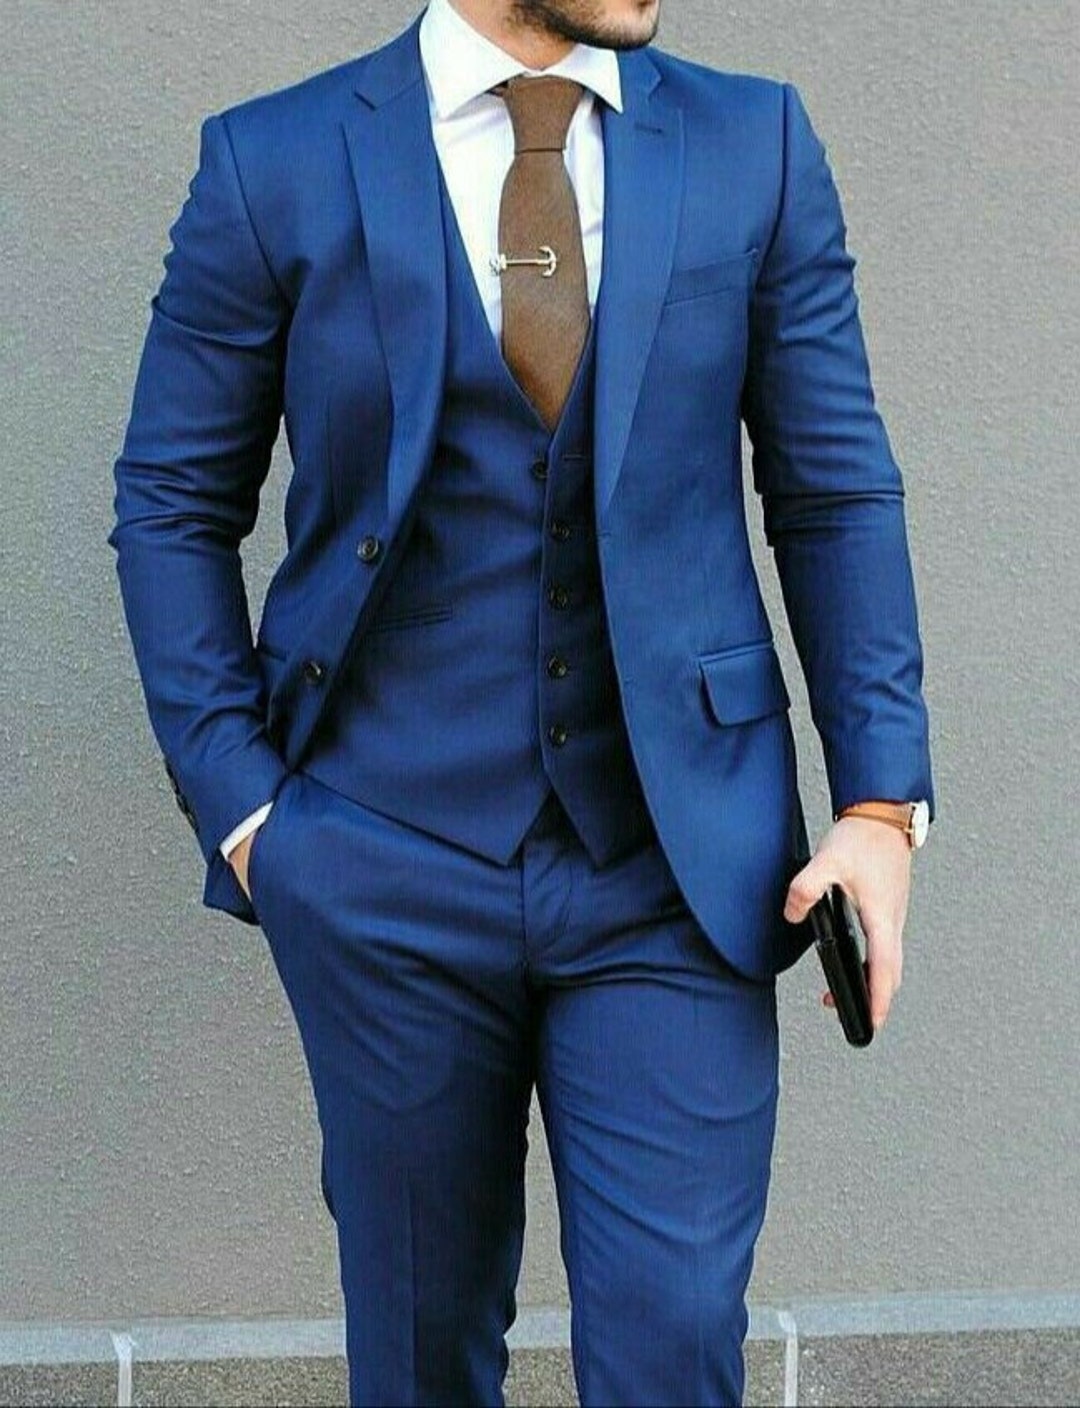 Men Suits Blue Designer Suit 3 Piece Suit Wedding Wear Party - Etsy